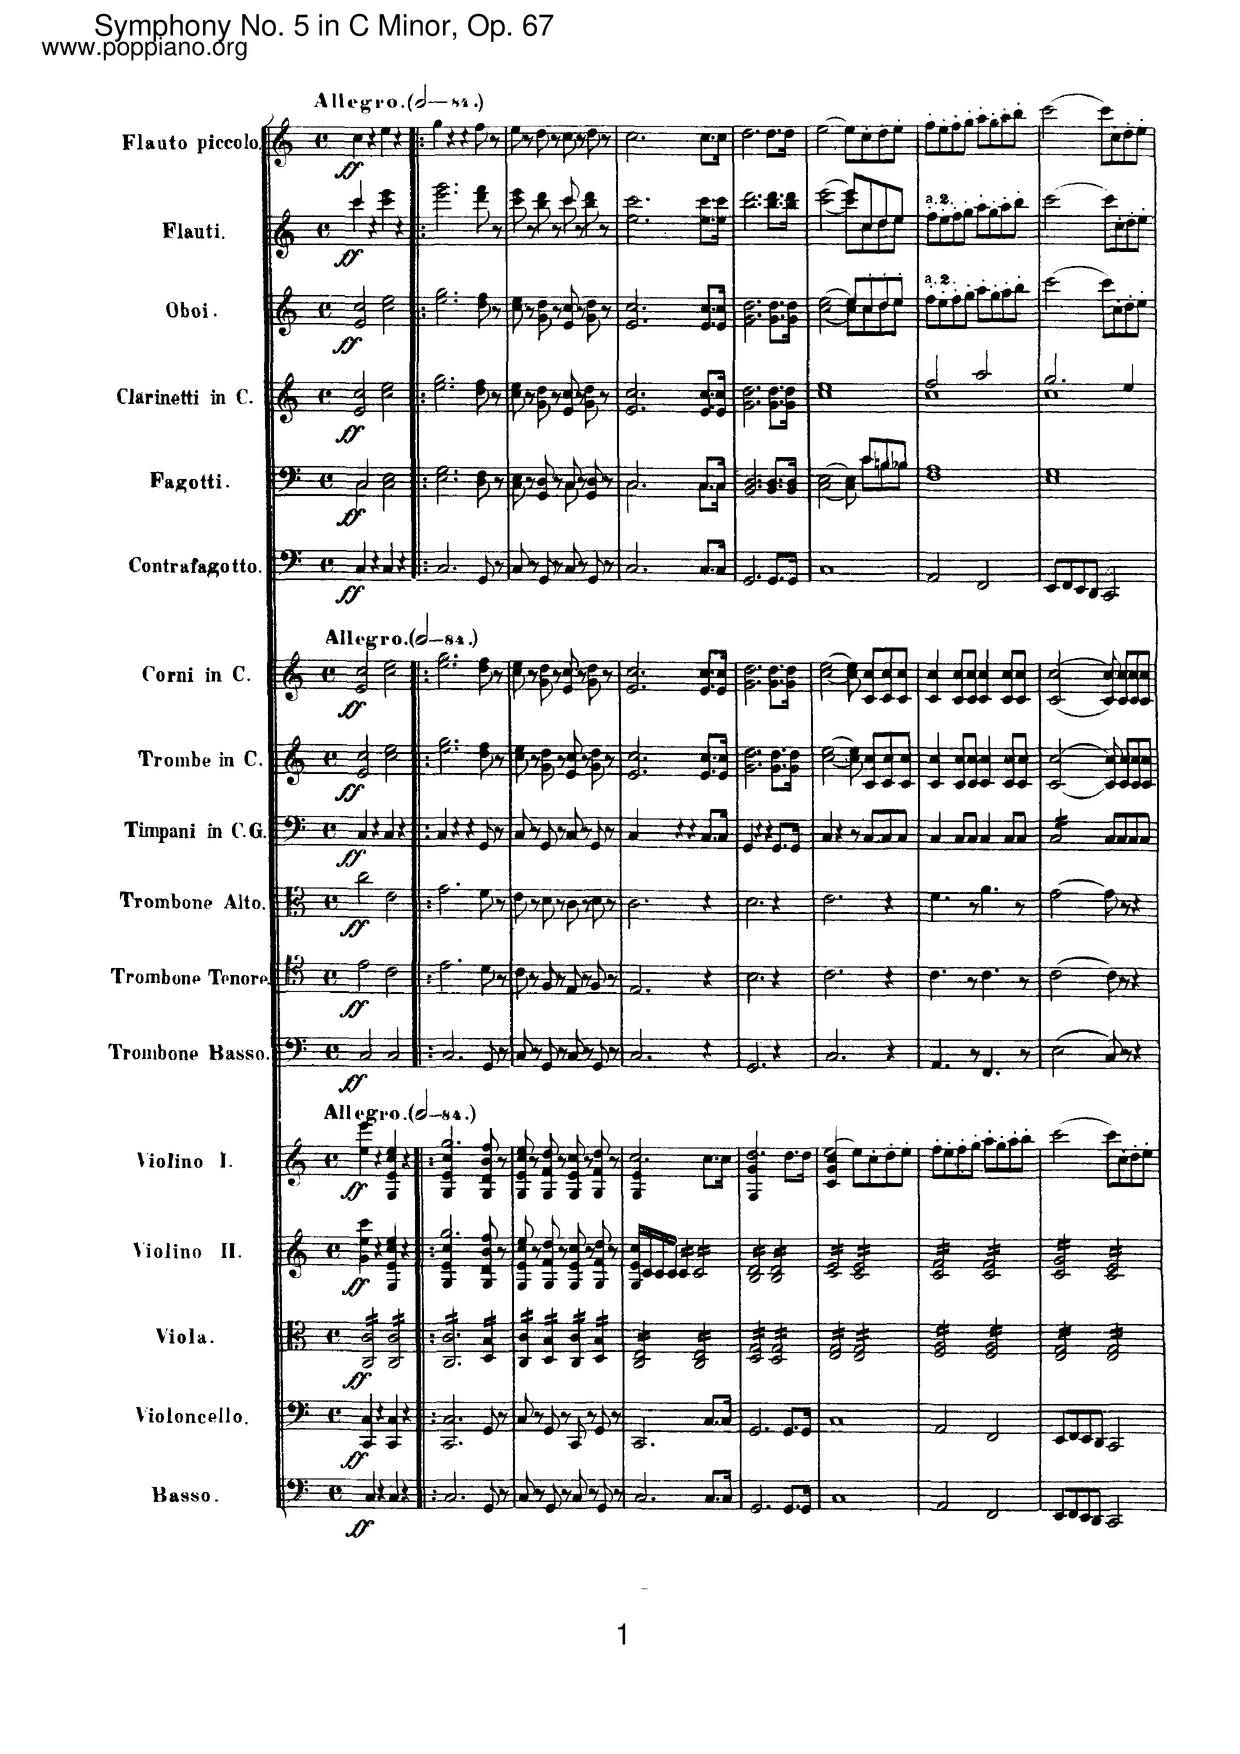 Symphony No. 5 in C Minor, Op. 67: I. Allegro con brioピアノ譜